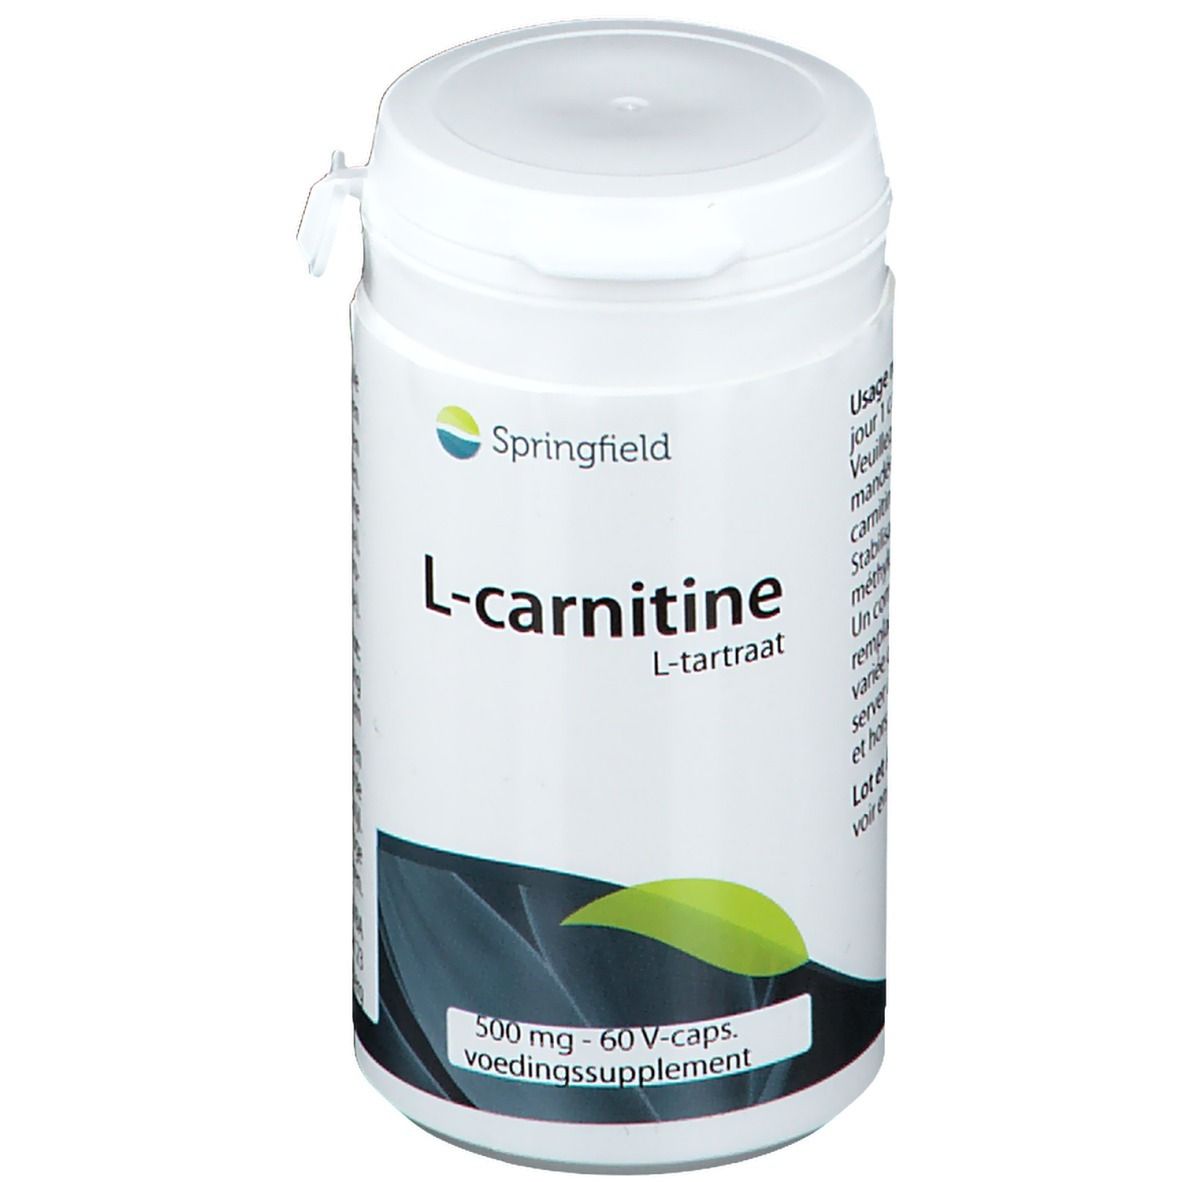 Springfield L-Carnitine (L-tartrate) 500 mg